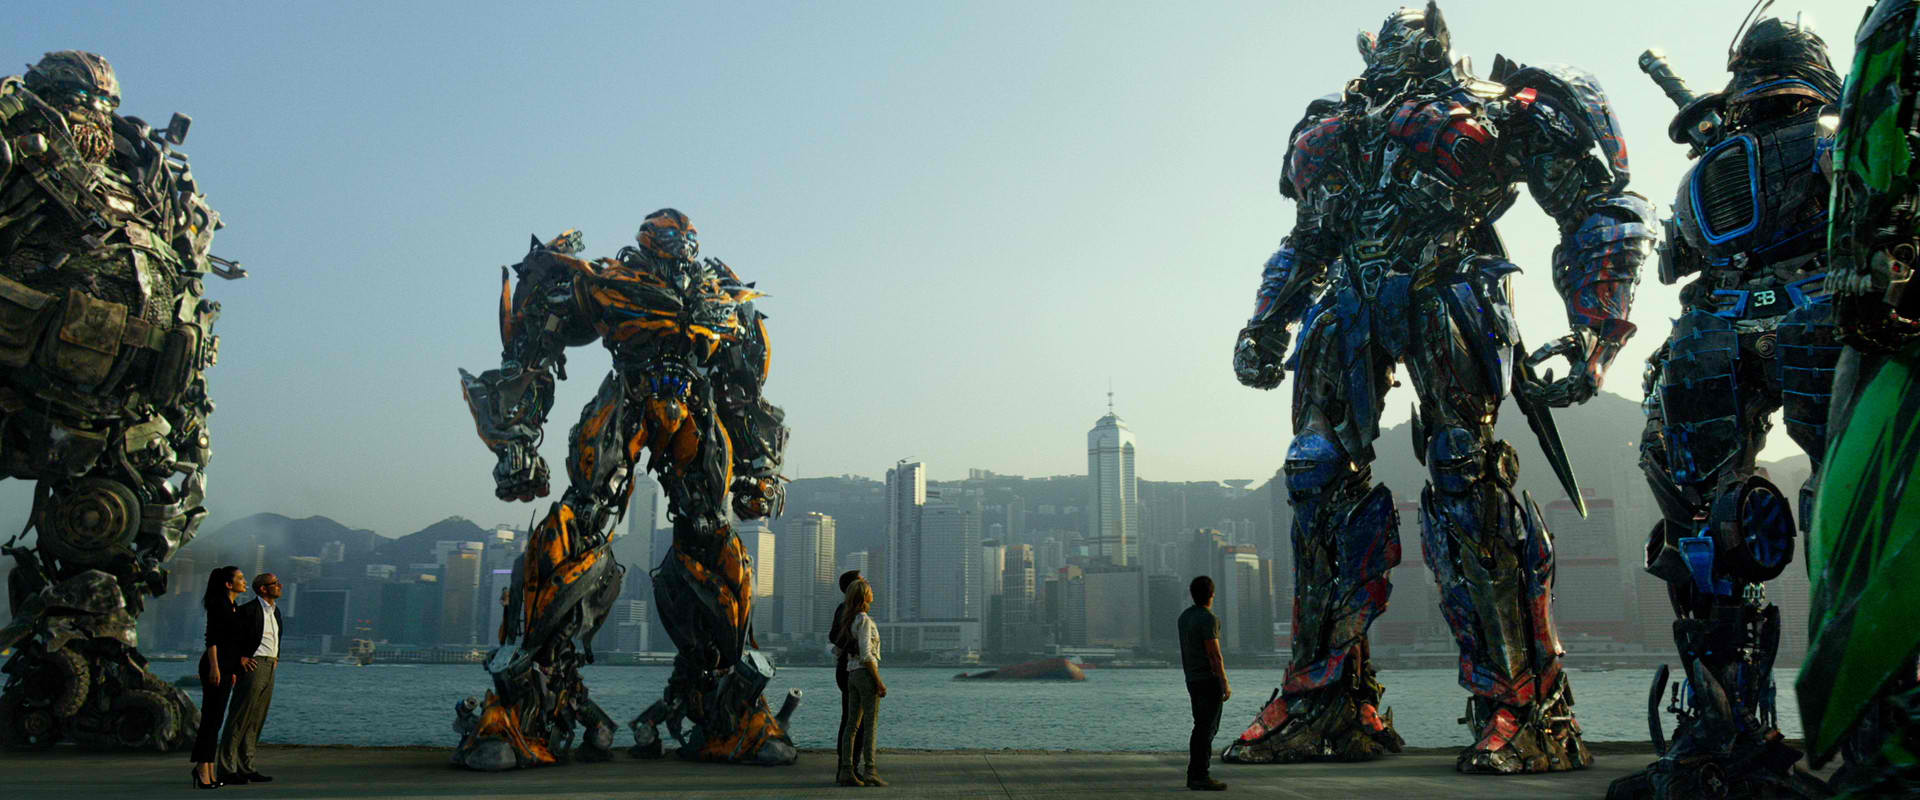 Transformers 4:  L'era dell'estinzione